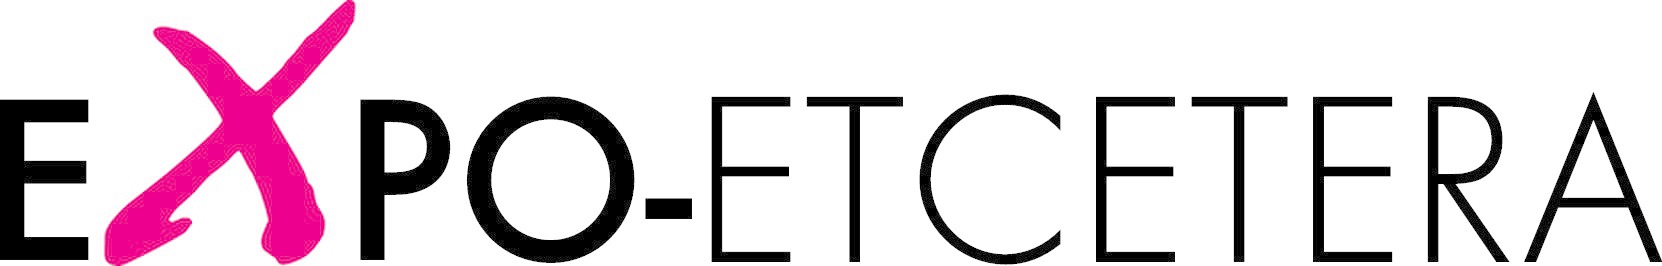 Het logo bestaat uit het woord Expo-etcetera. De x is wat groter en staat in het roze